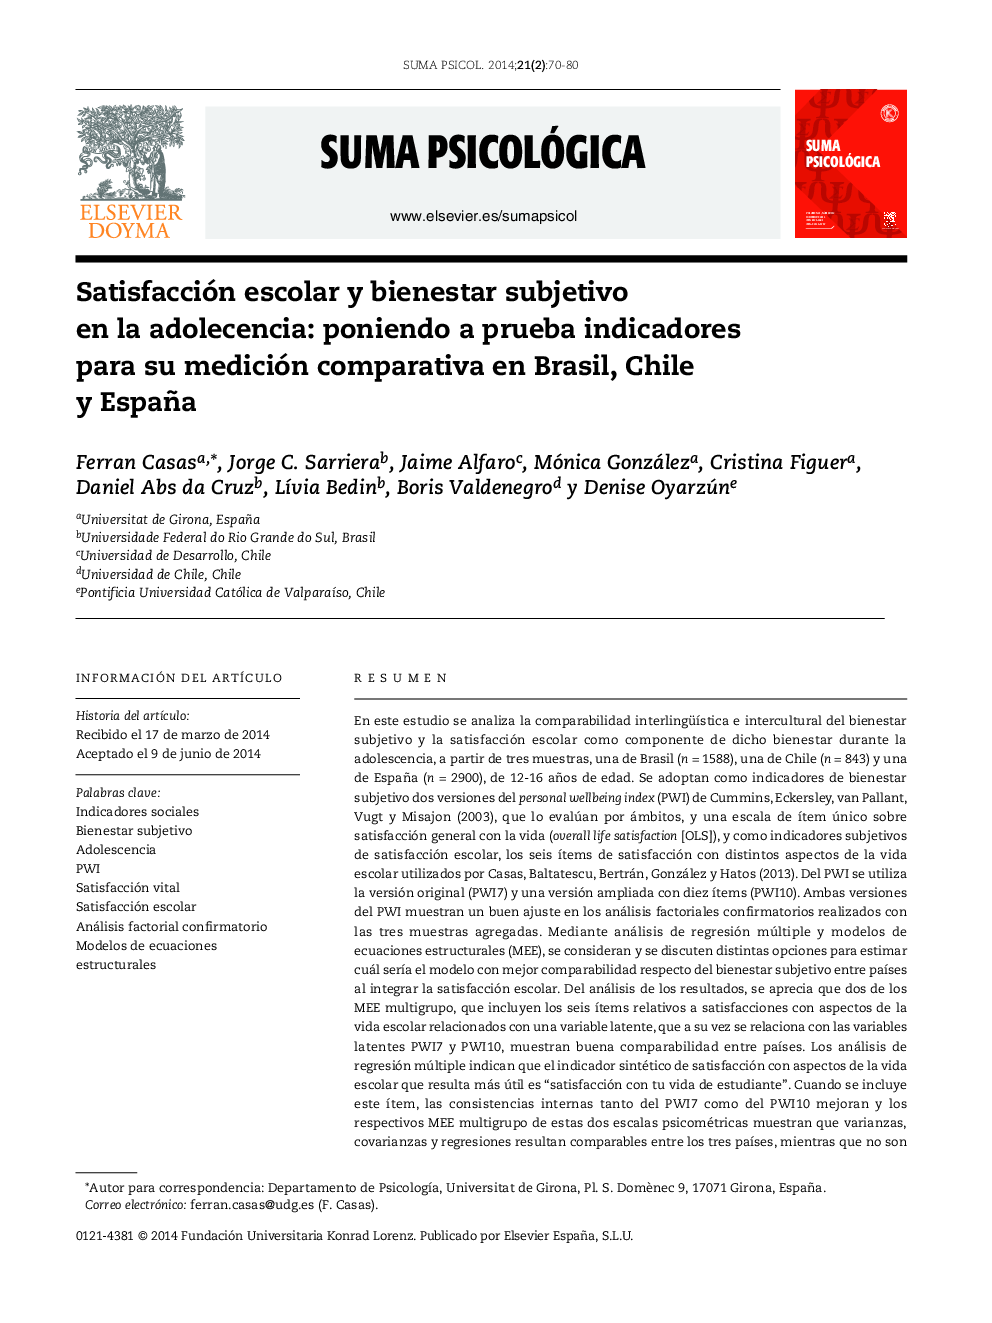 Satisfacción escolar y bienestar subjetivo en la adolecencia: poniendo a prueba indicadores para su medición comparativa en Brasil, Chile y España